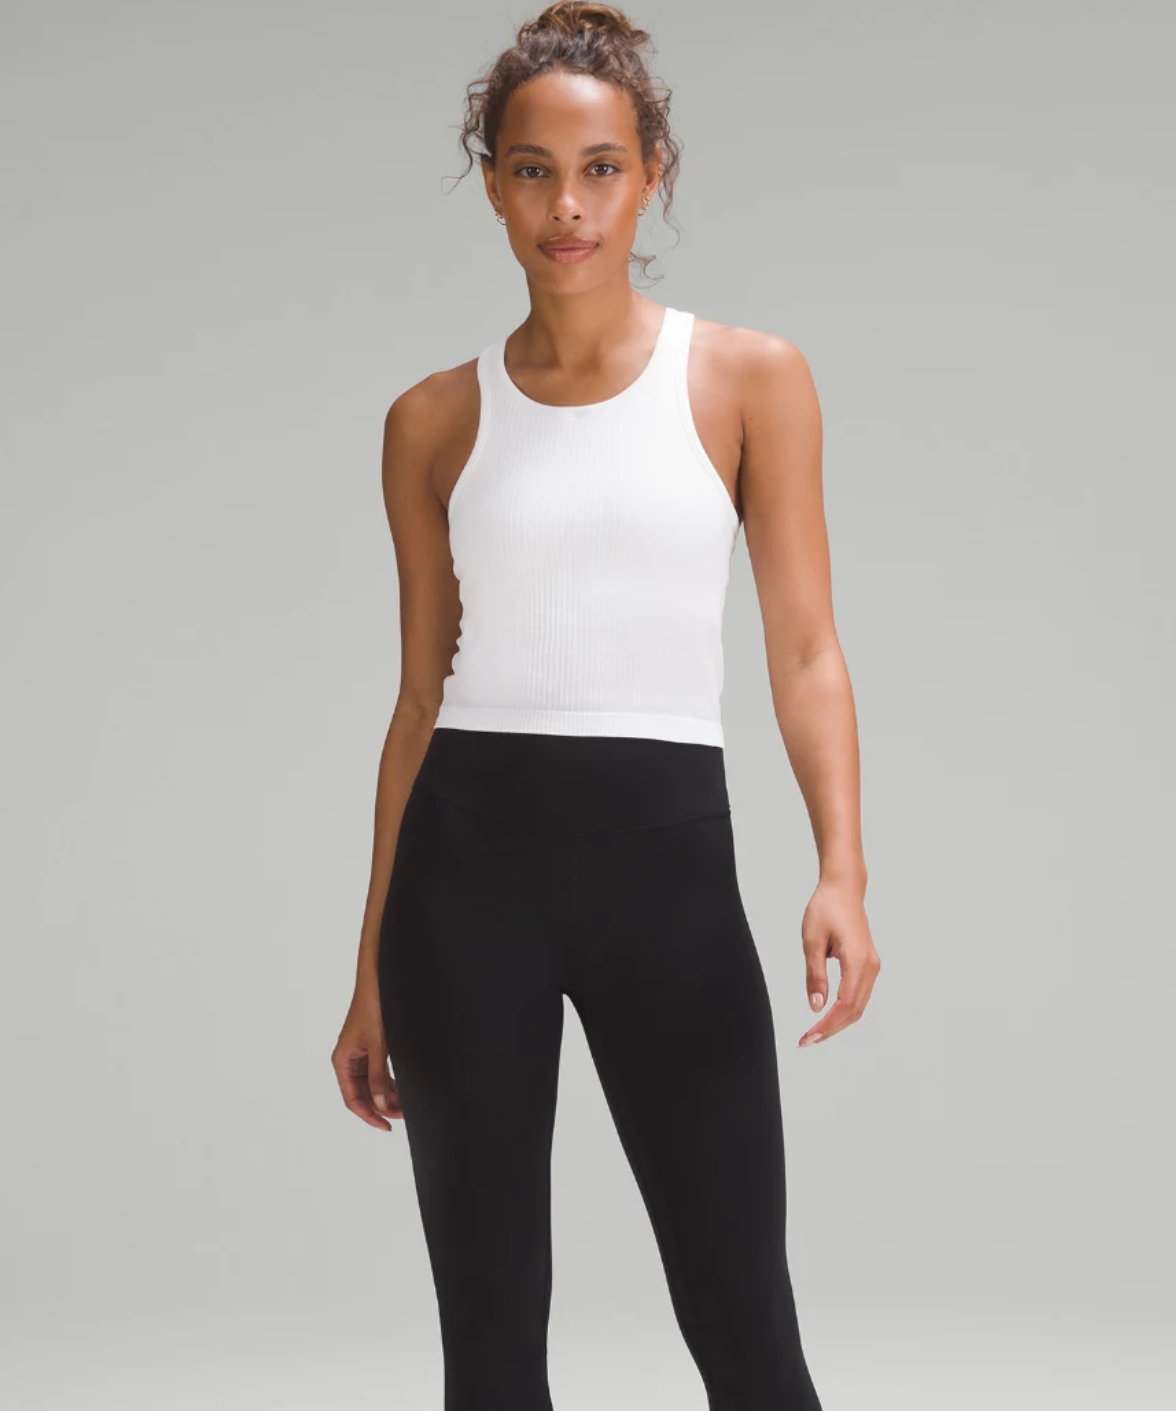 Lululemon Black Align 25 Yoga Pants High Rise Women Leggings Size